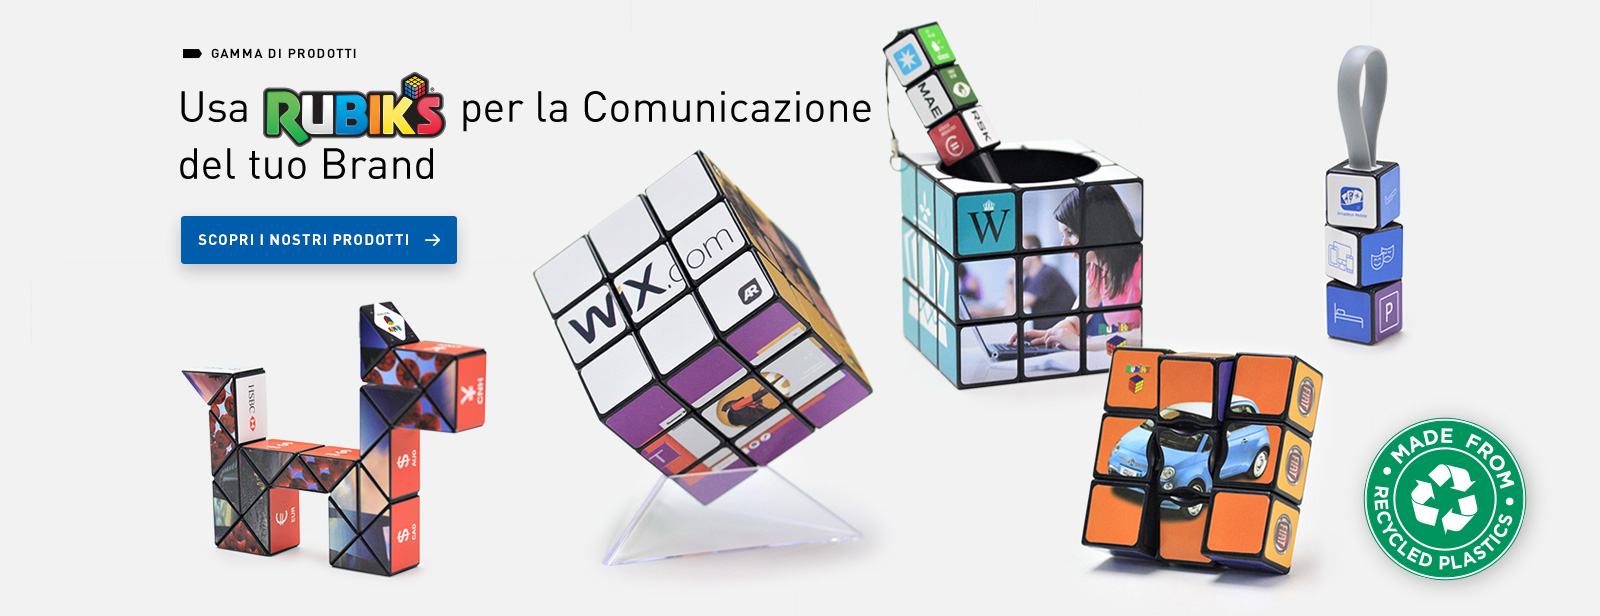 Usa Rubik per la Comunicazione del tuo Brand